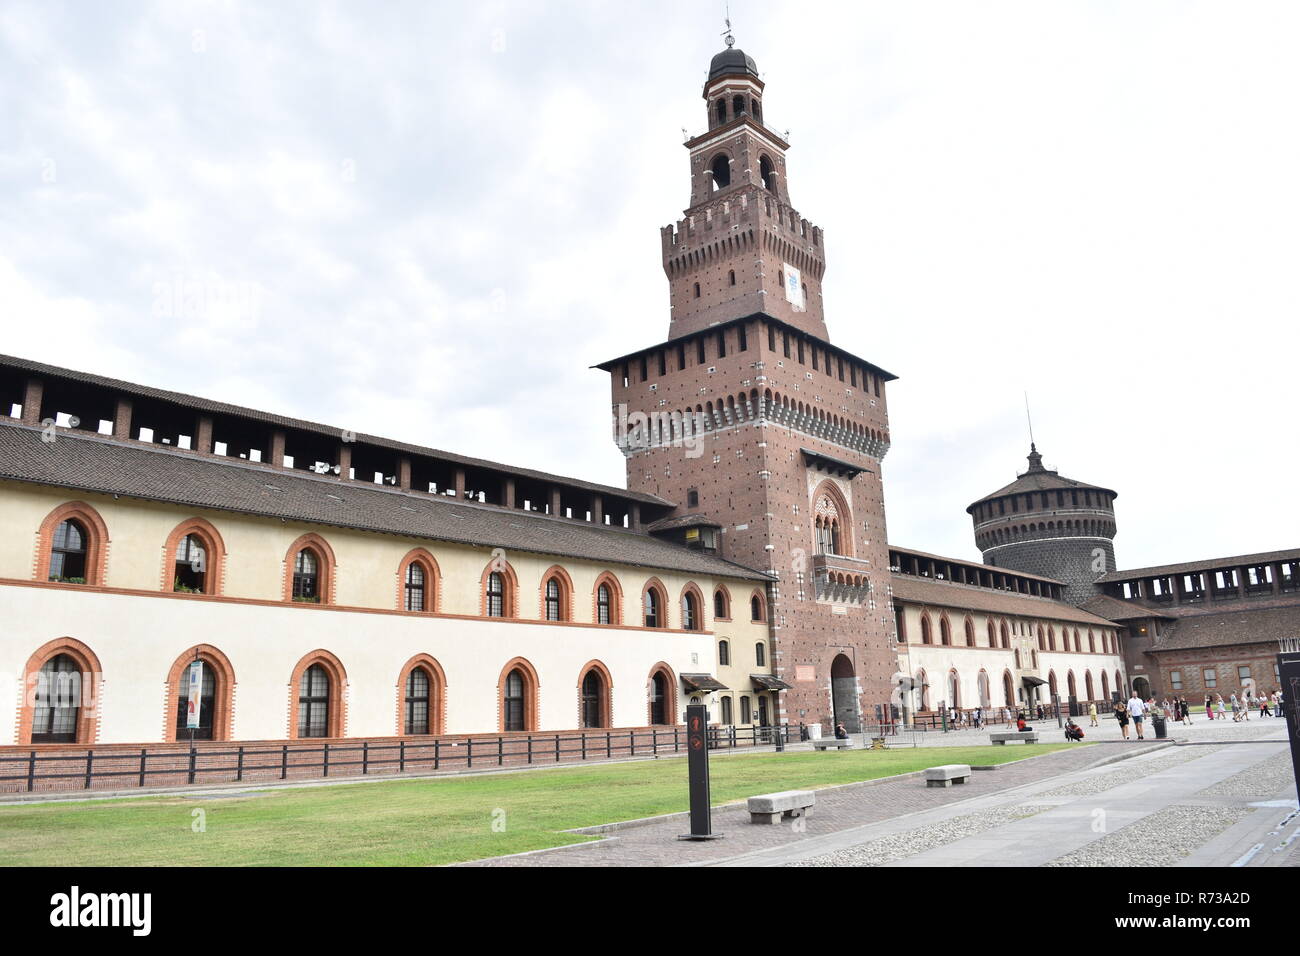 The internal yard of the Sforza castle (Castello Sforzesco) in Milan, Italy Stock Photo